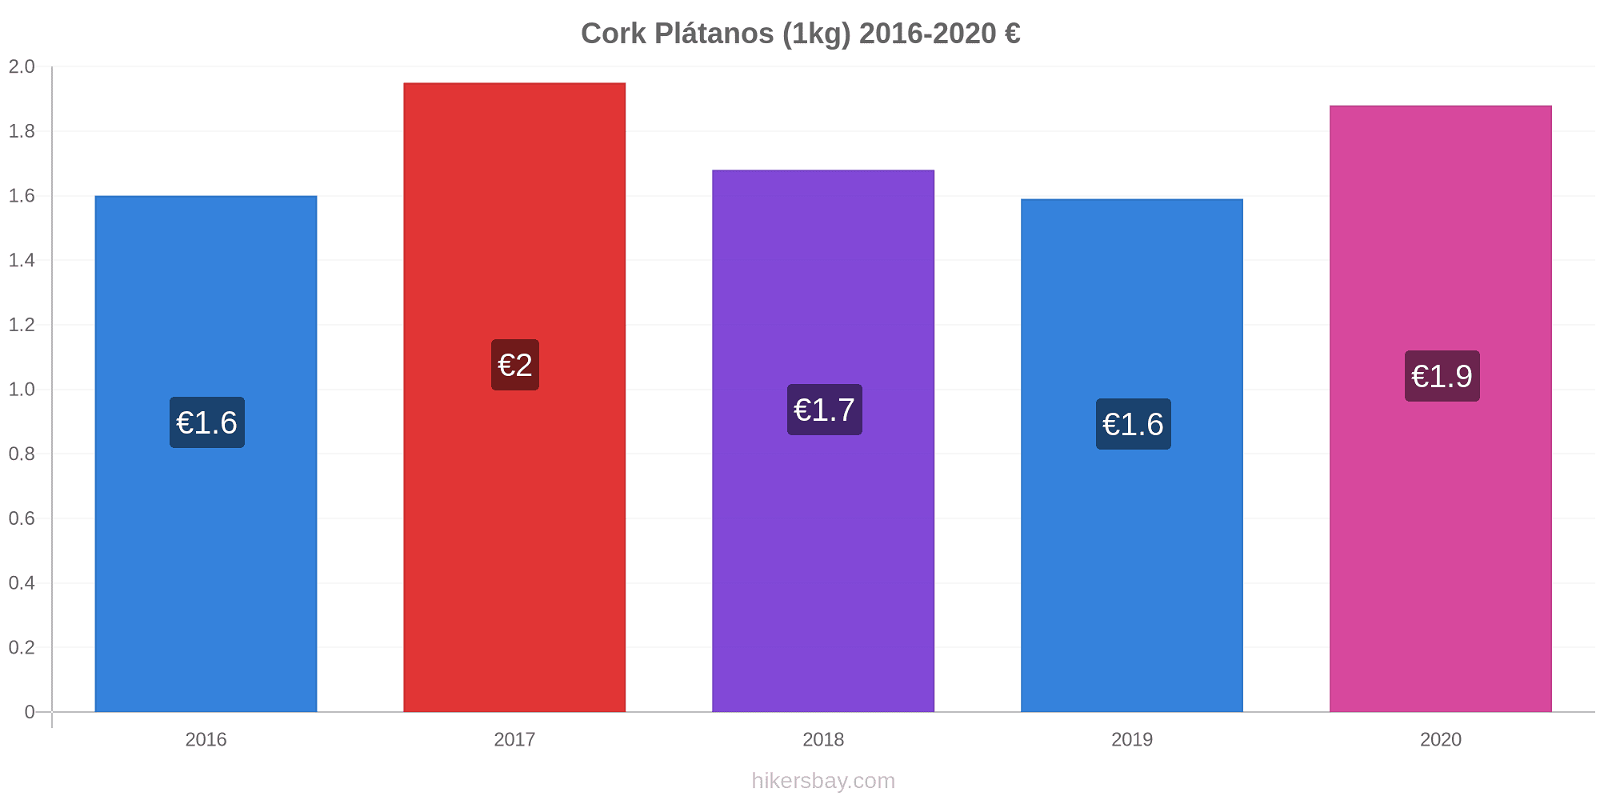 Cork cambios de precios Plátano (1kg) hikersbay.com